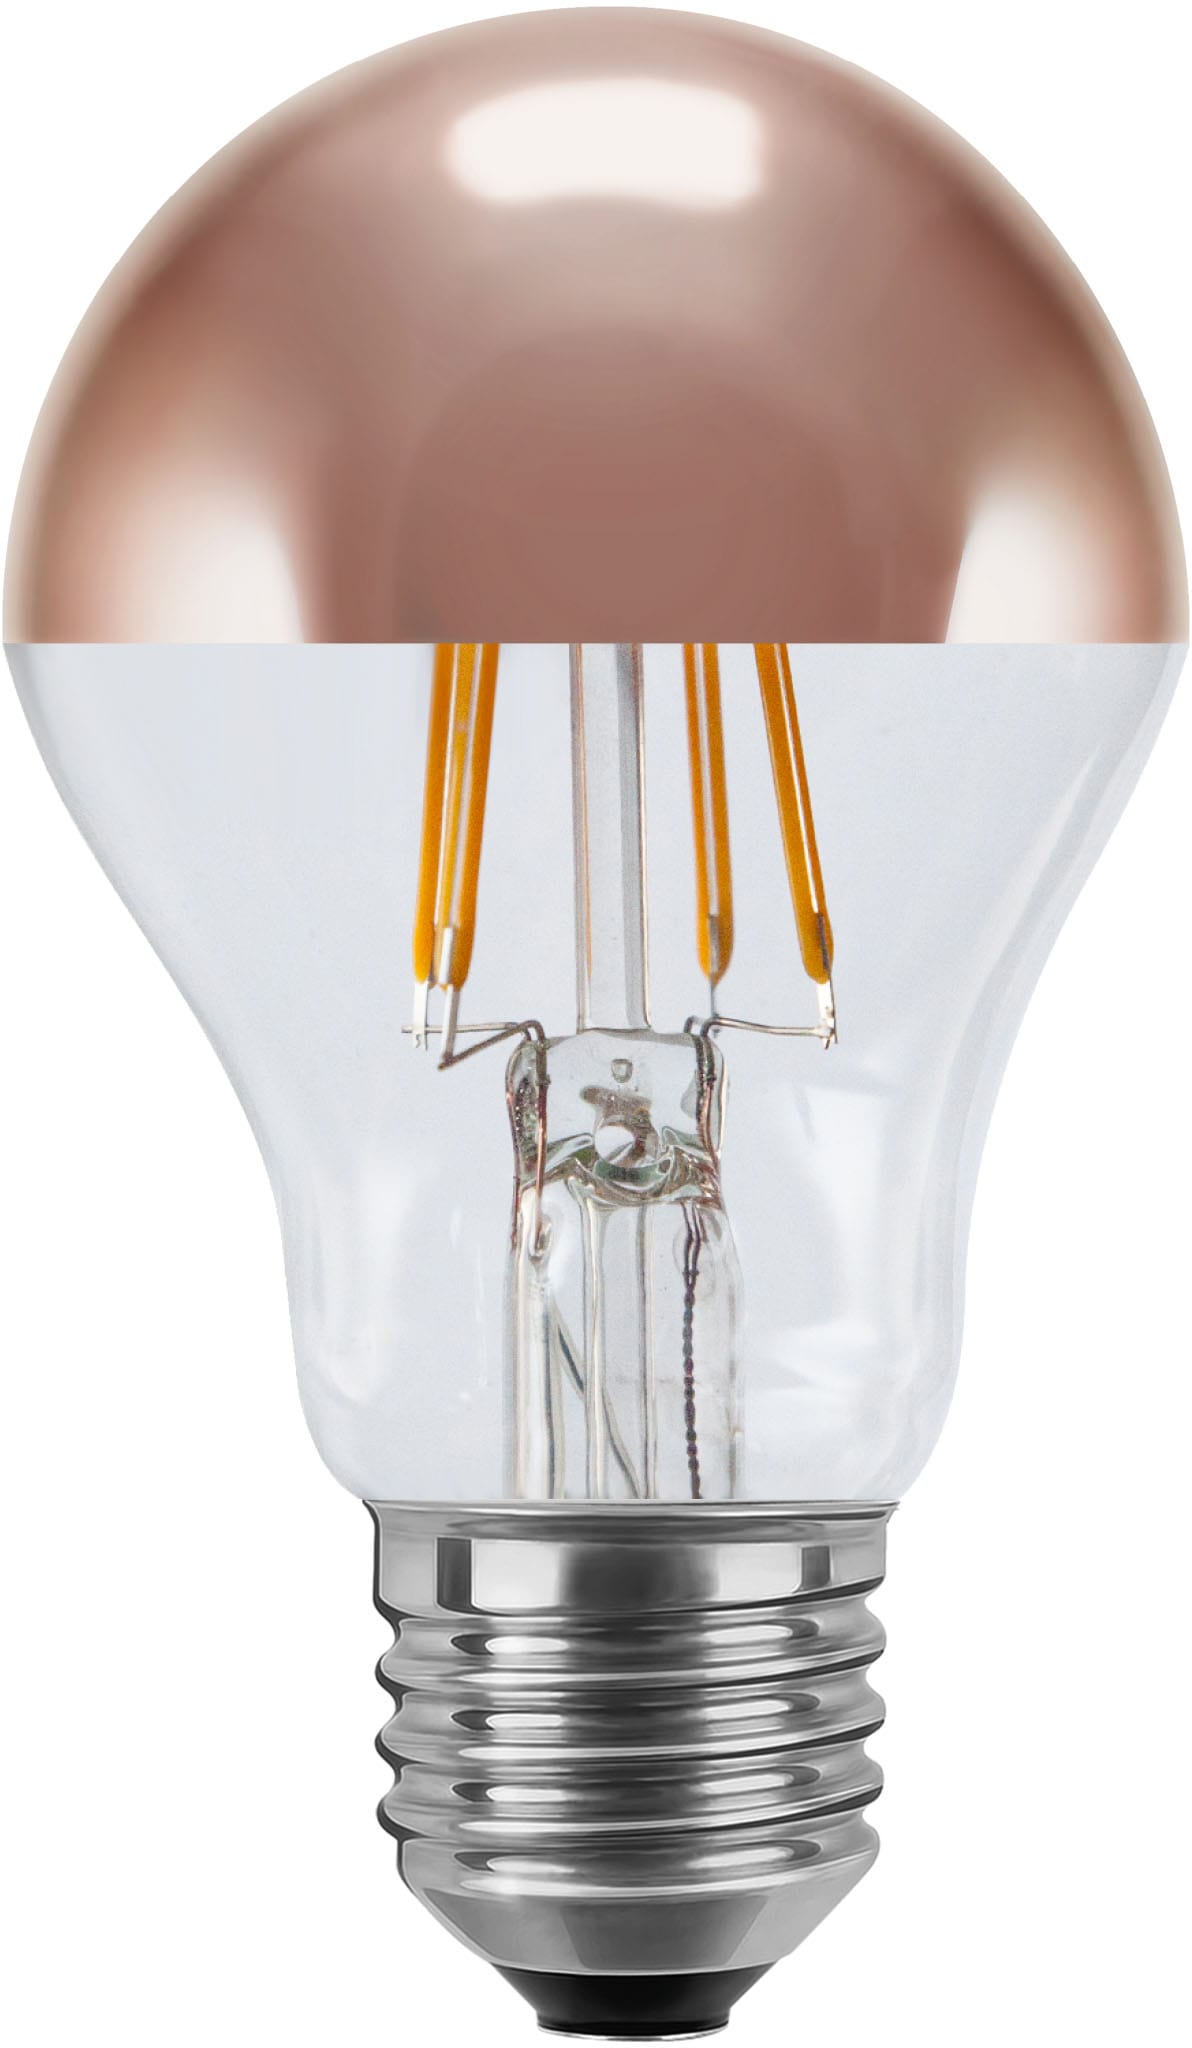 SEGULA LED-Leuchtmittel »LED Glühlampe Spiegelkopf Kupfer«, E27, Warmweiß, dimmbar, E27, Glühlampe Spiegelkopf Kupfer, 2700K